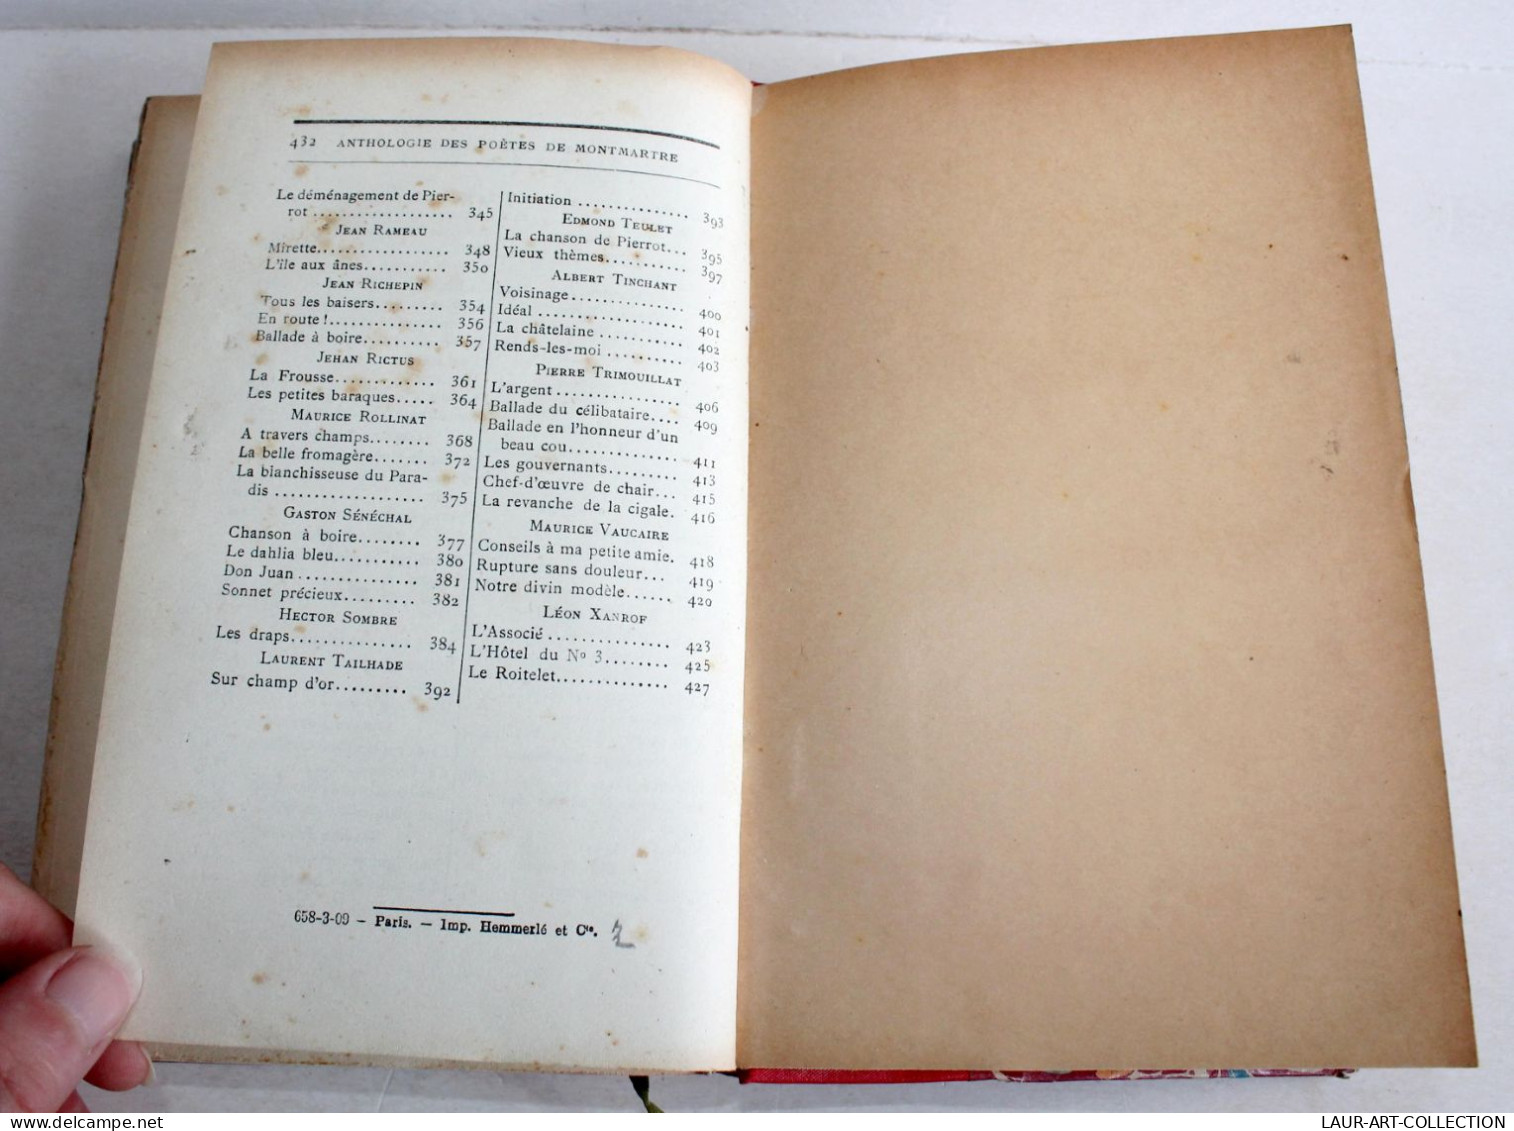 ANTHOLOGIE DES POETES DE MONTMARTRE par B. MILLANVOYE + NOTES BIOGRAPHIQUES 1909 / LIVRE ANCIEN XXe SIECLE (1803.255)